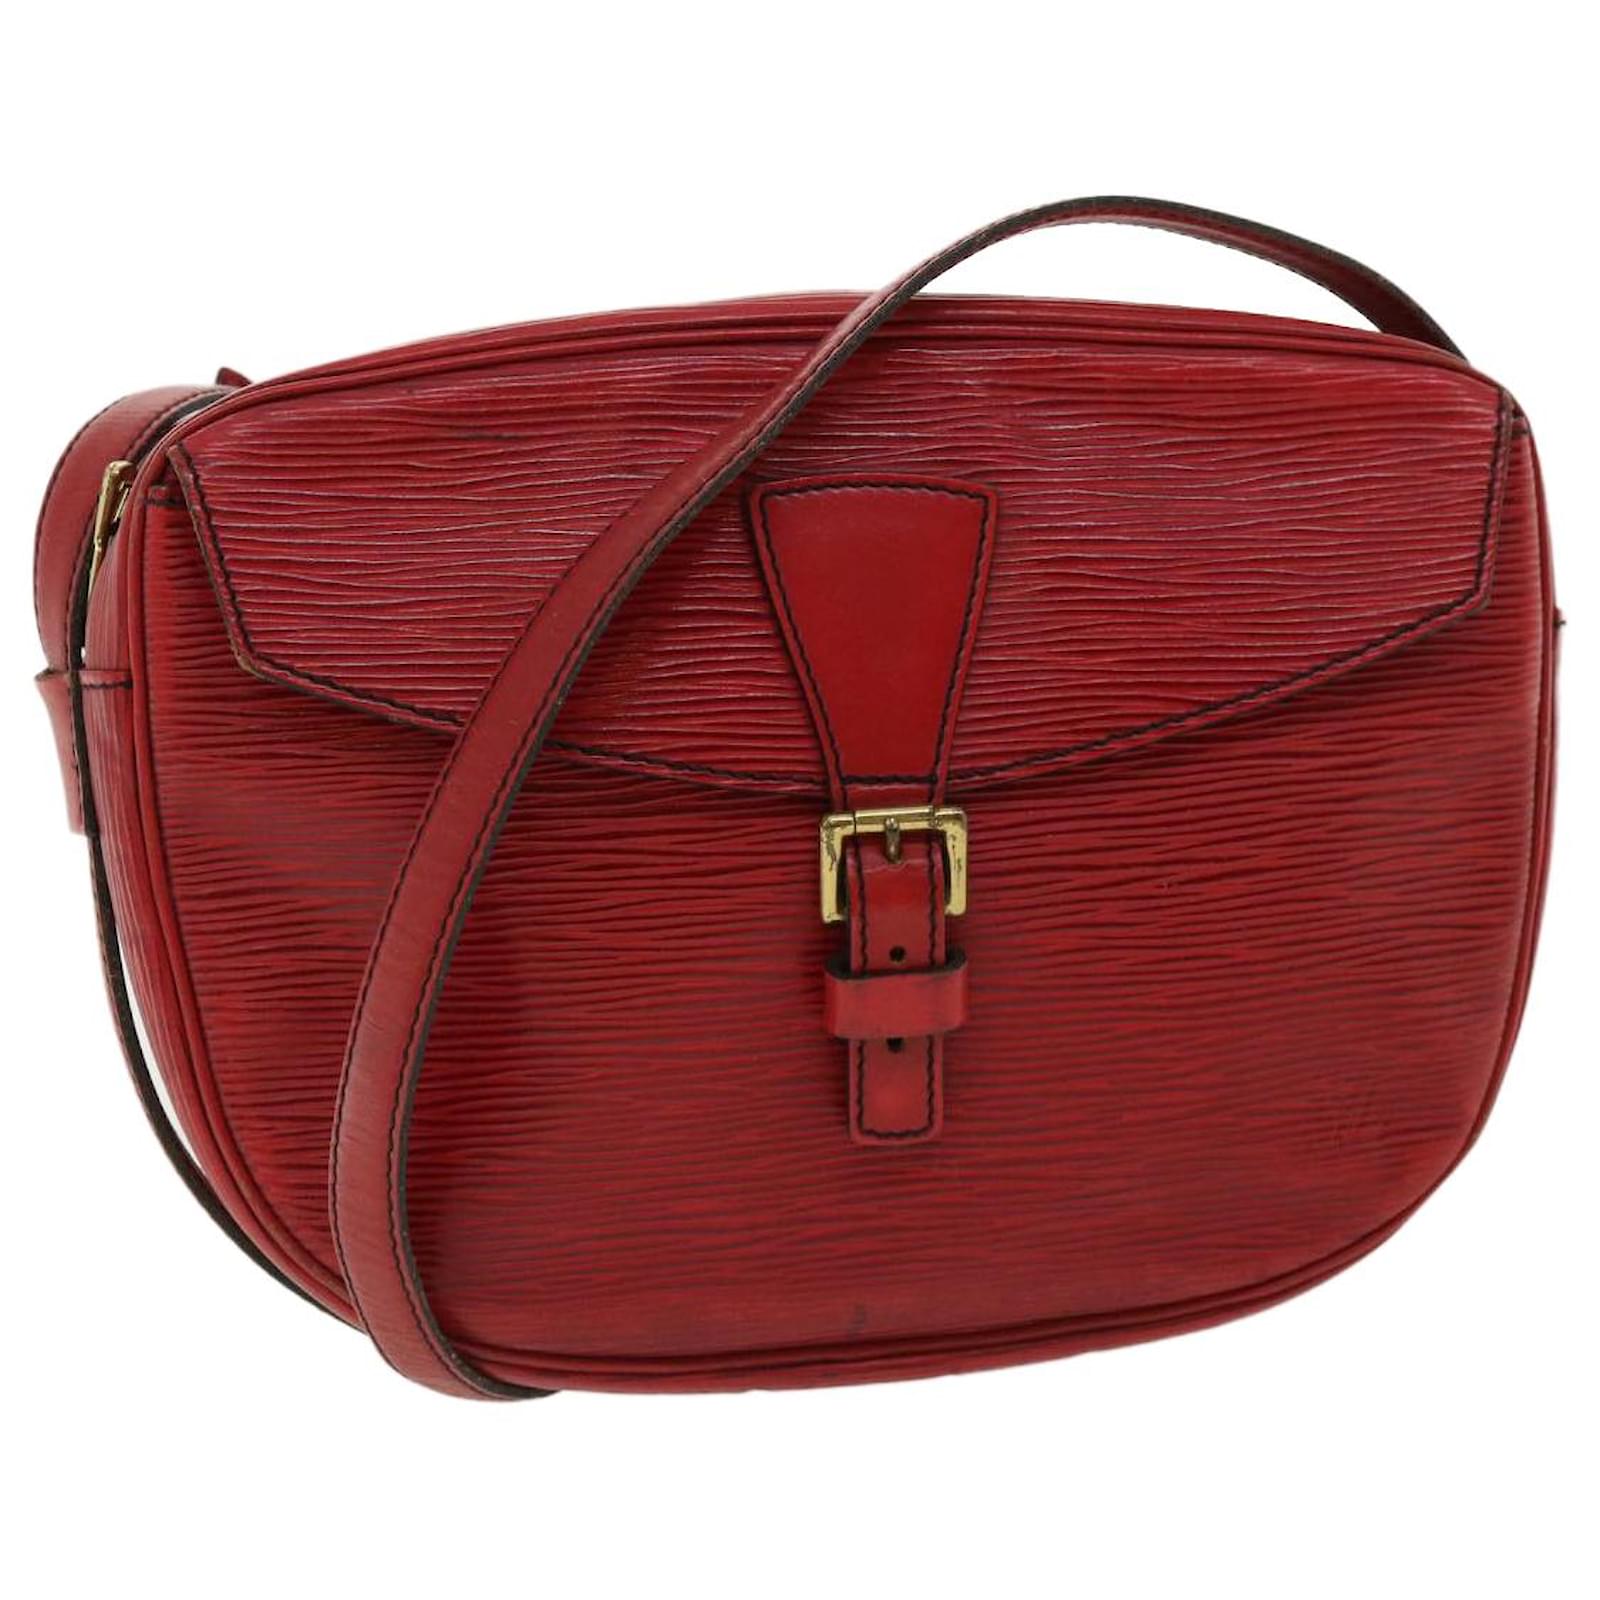 LV's Pochette Metis or Carryall PM? : r/handbags